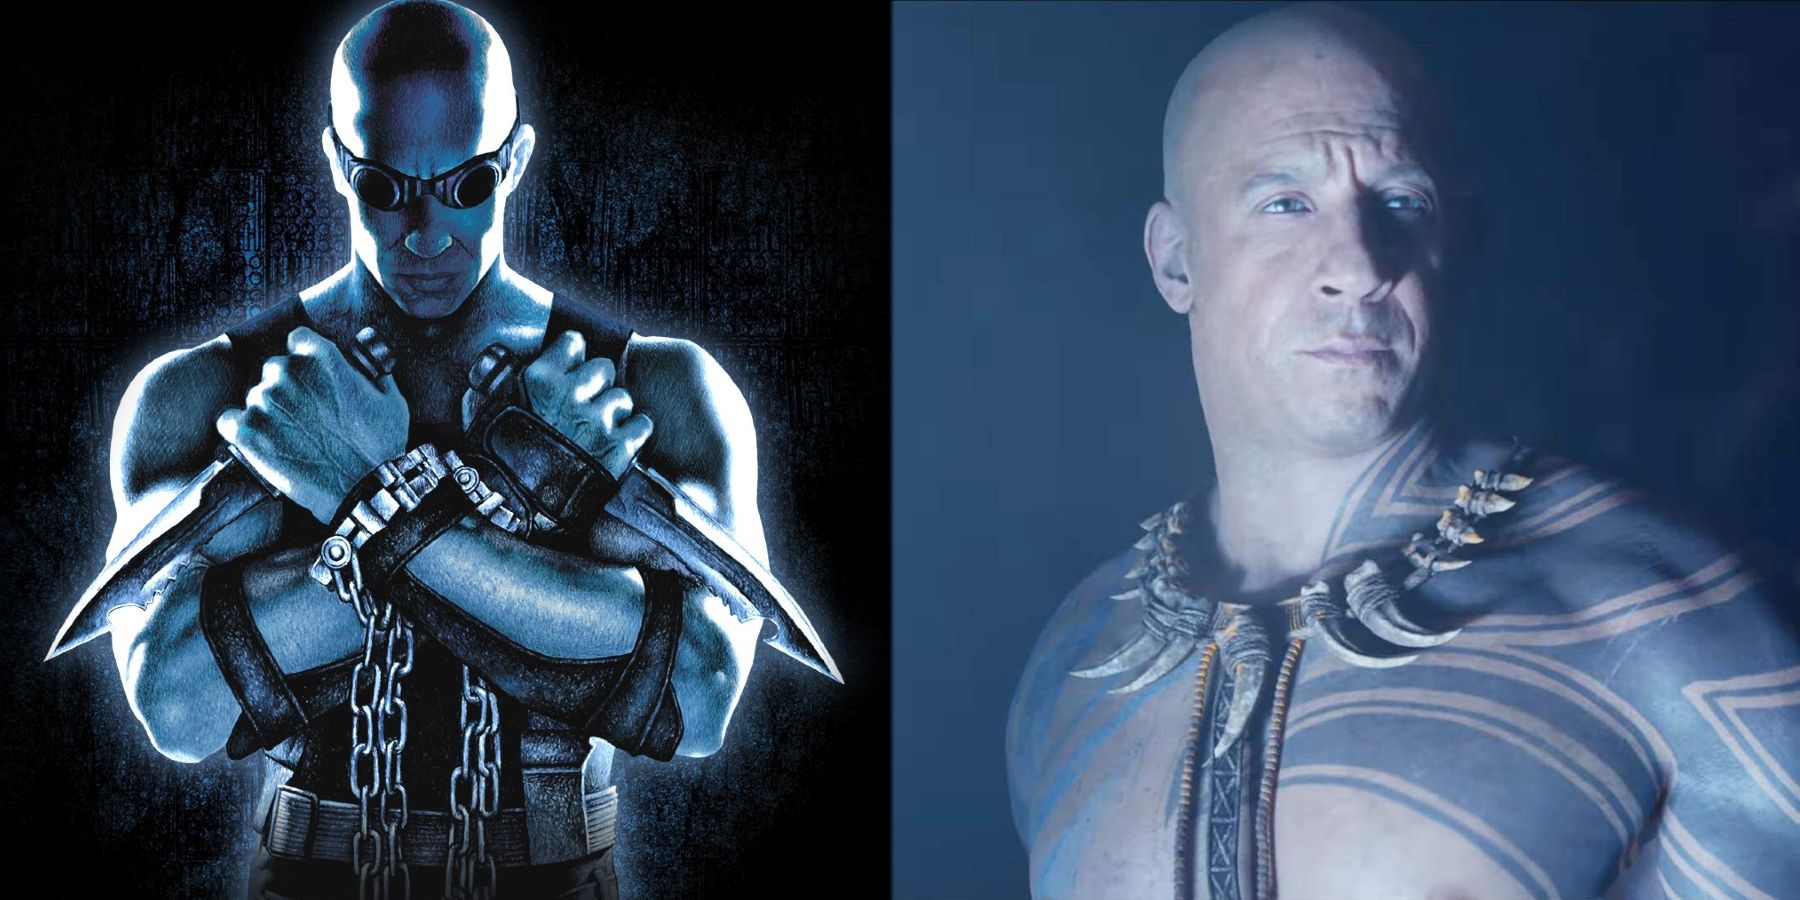 From Vin Diesel as Riddick to Santiago.